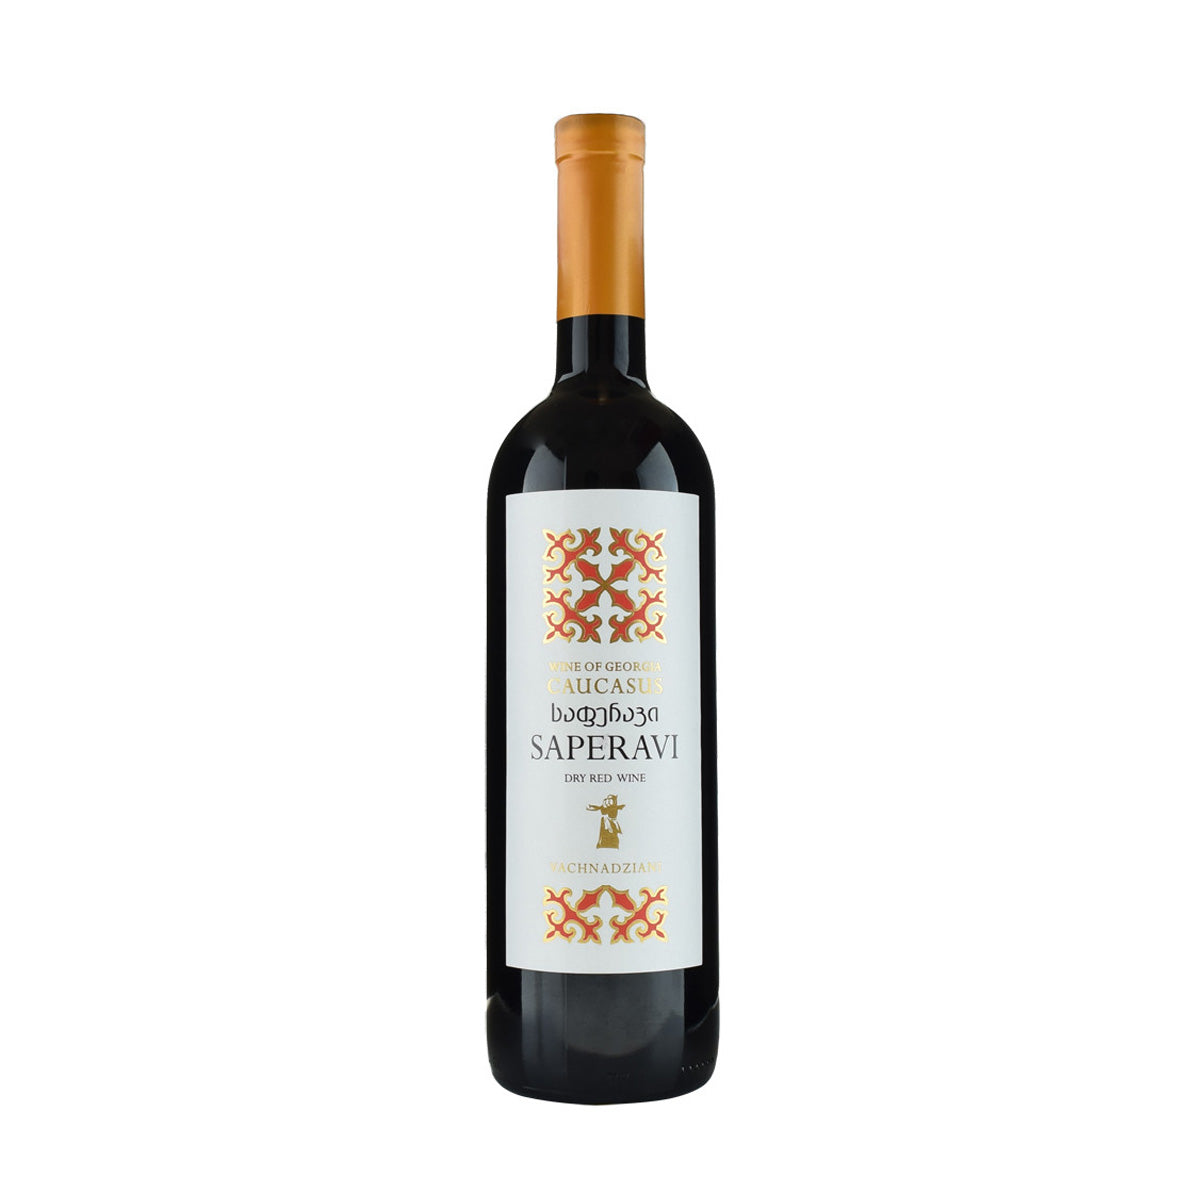 Vachnadziani Winery Saperavi 2020